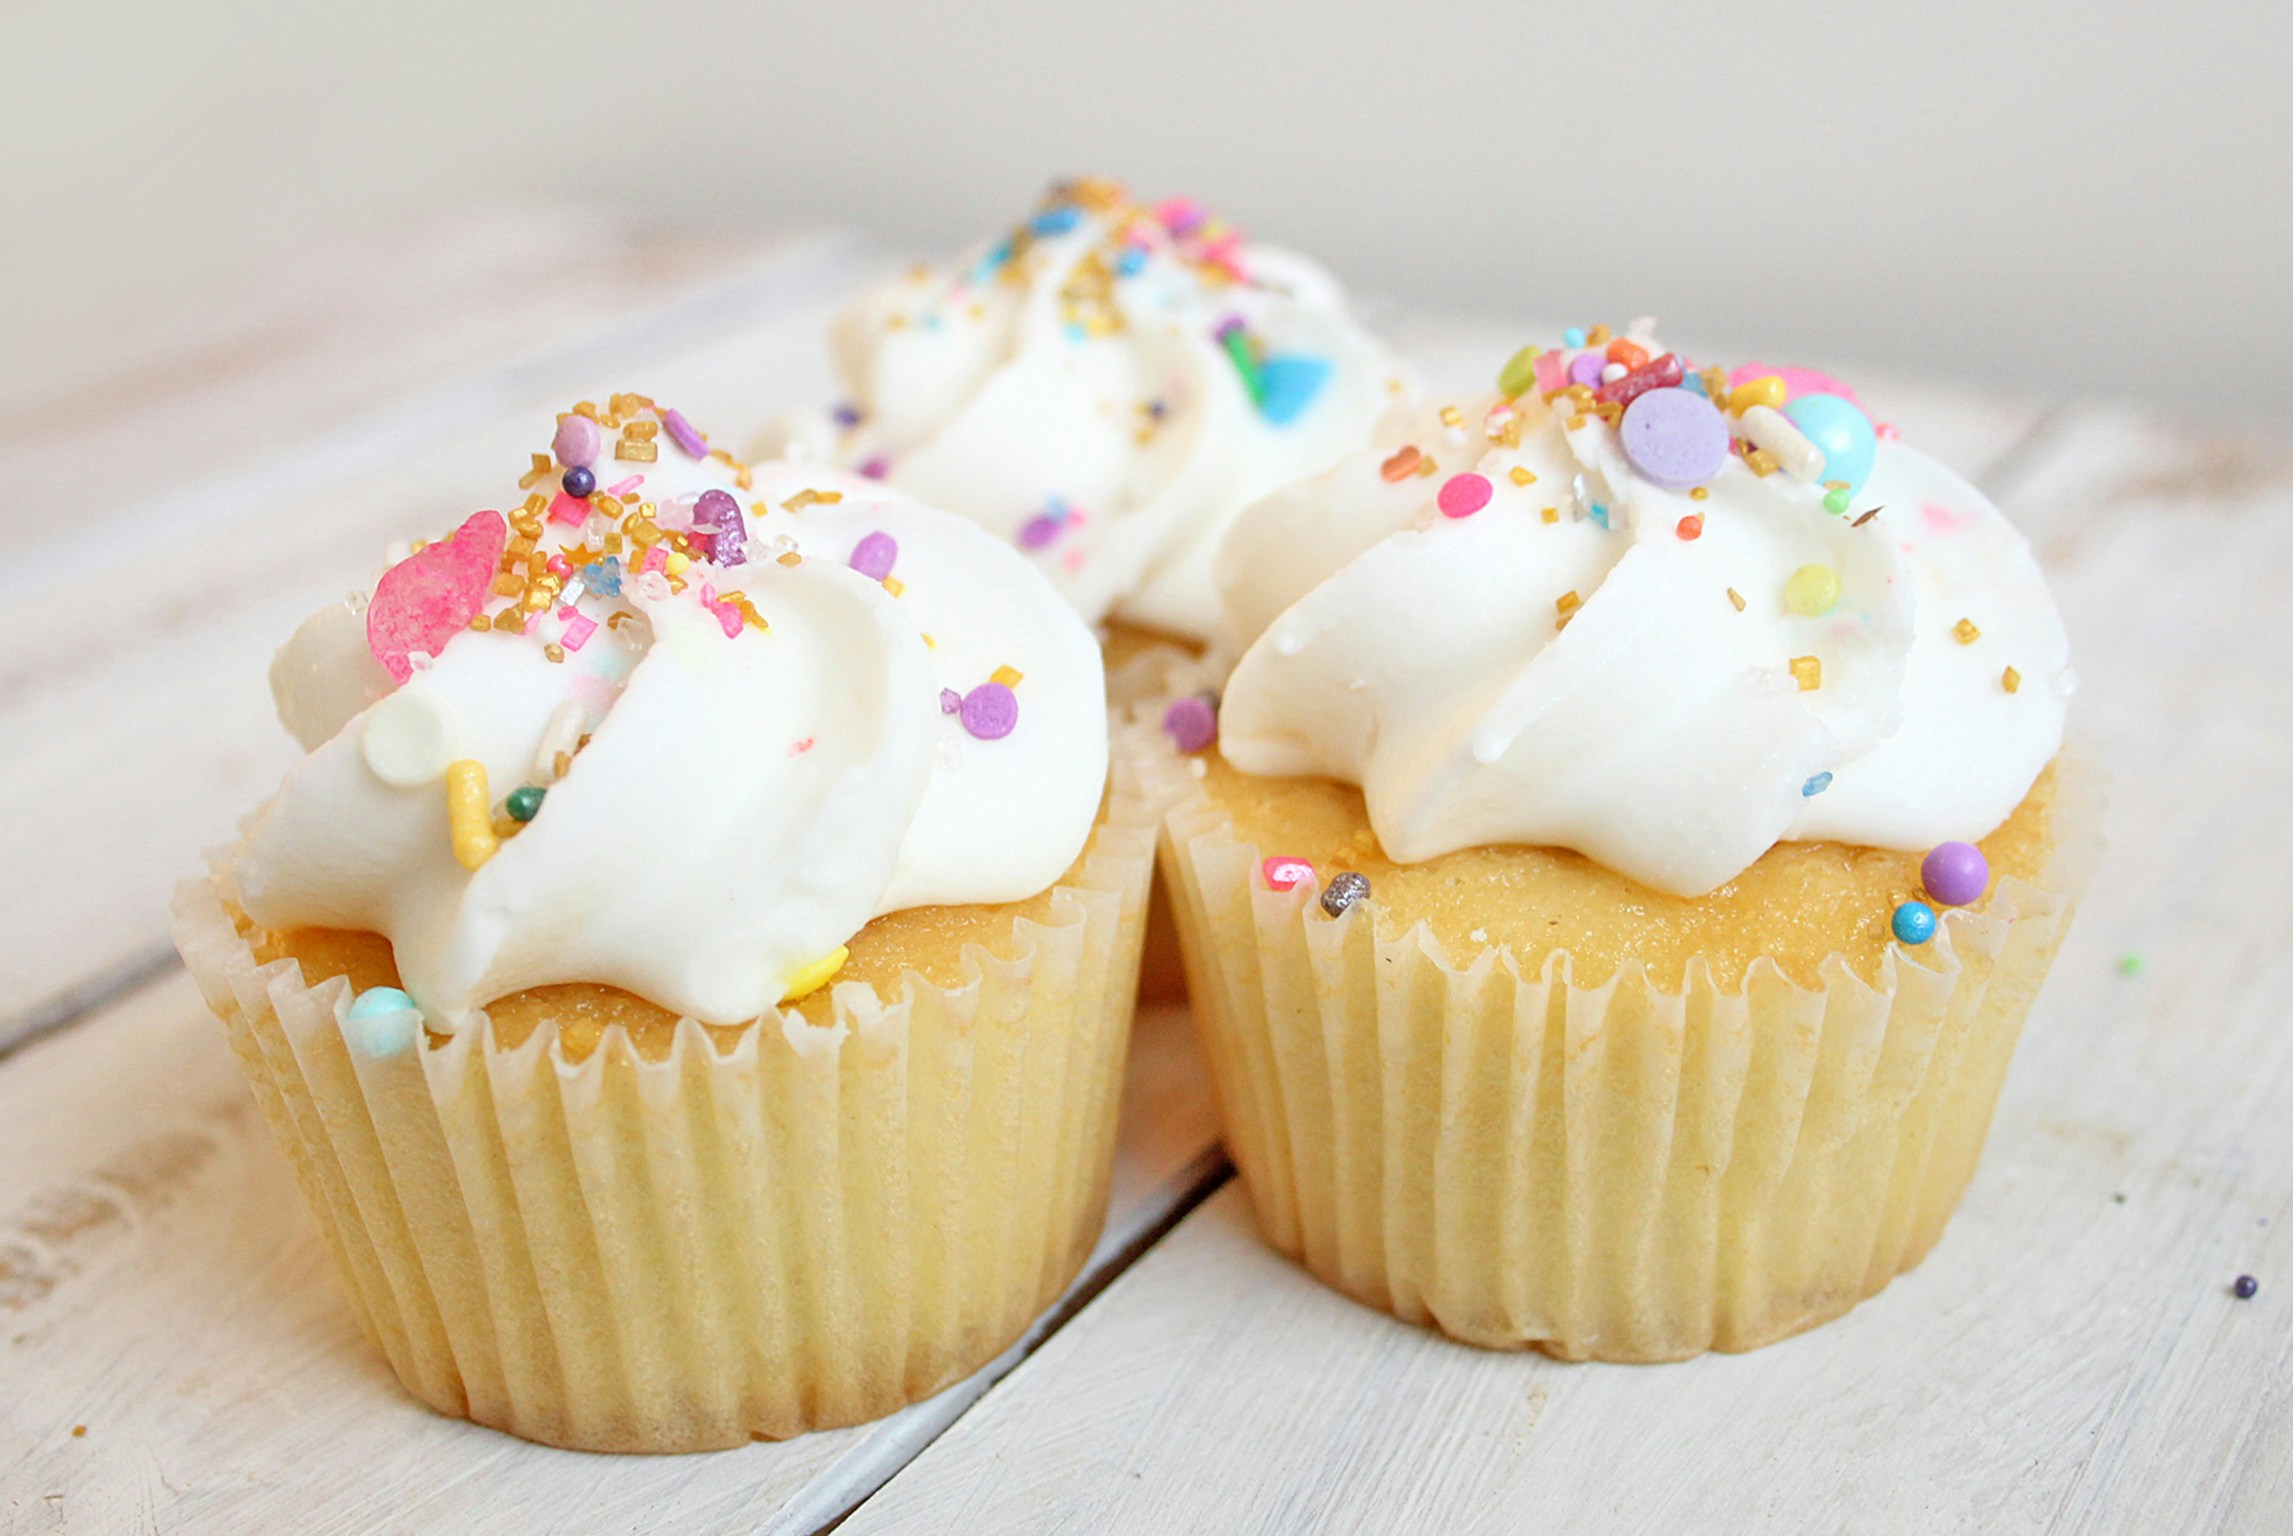 Cupcakes with pastel sprinkles | Source: Unsplash